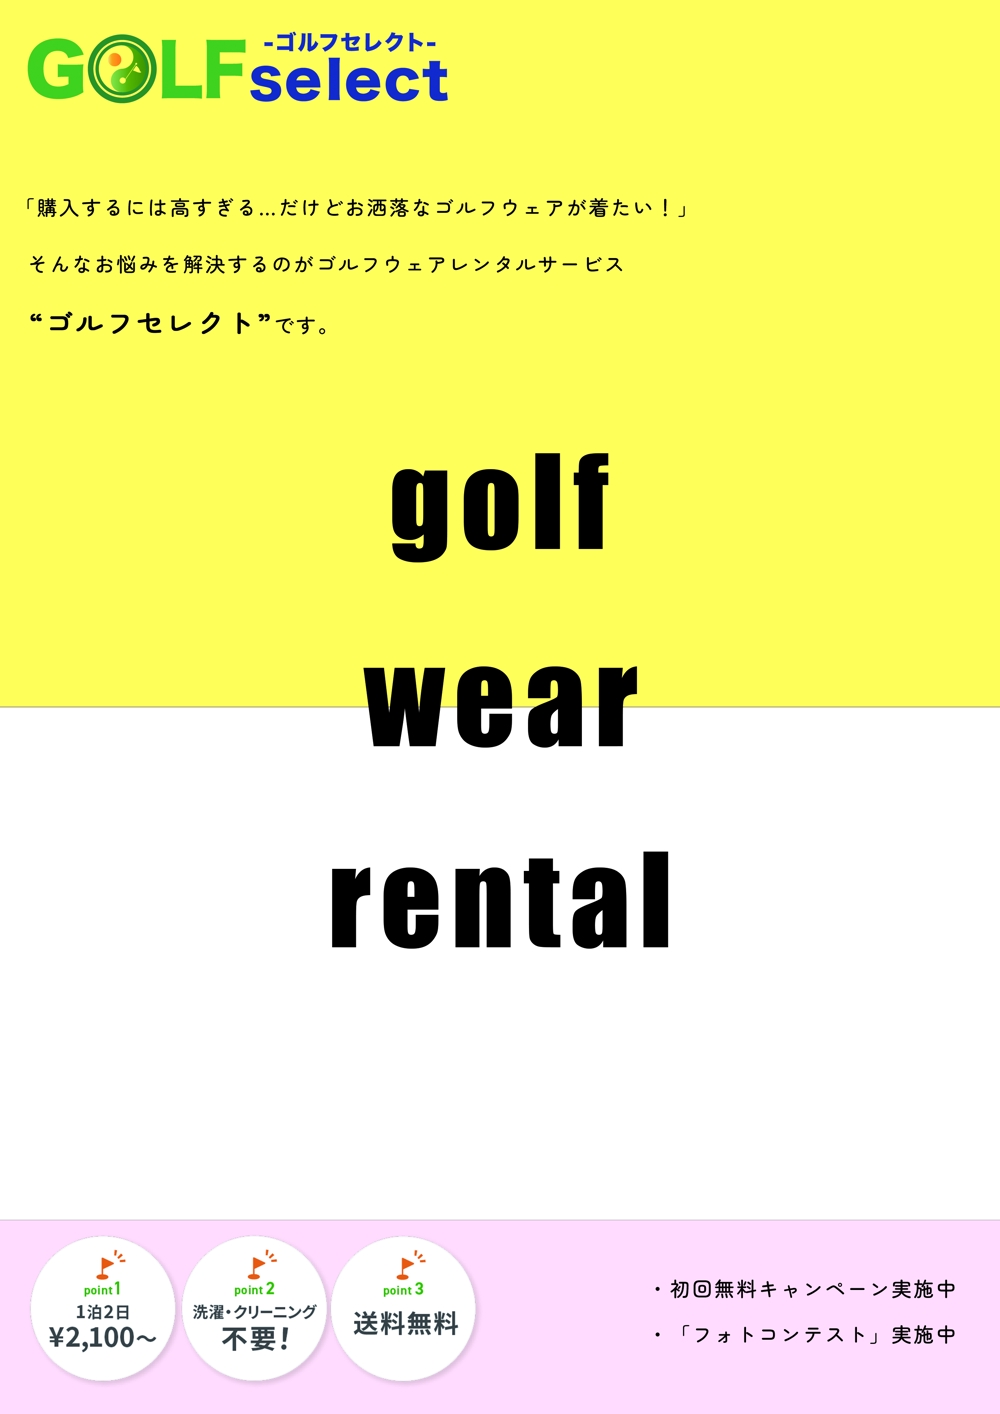 ゴルフウェアレンタルサービス「ゴルフセレクト」のA4広告1ページ（片面）制作